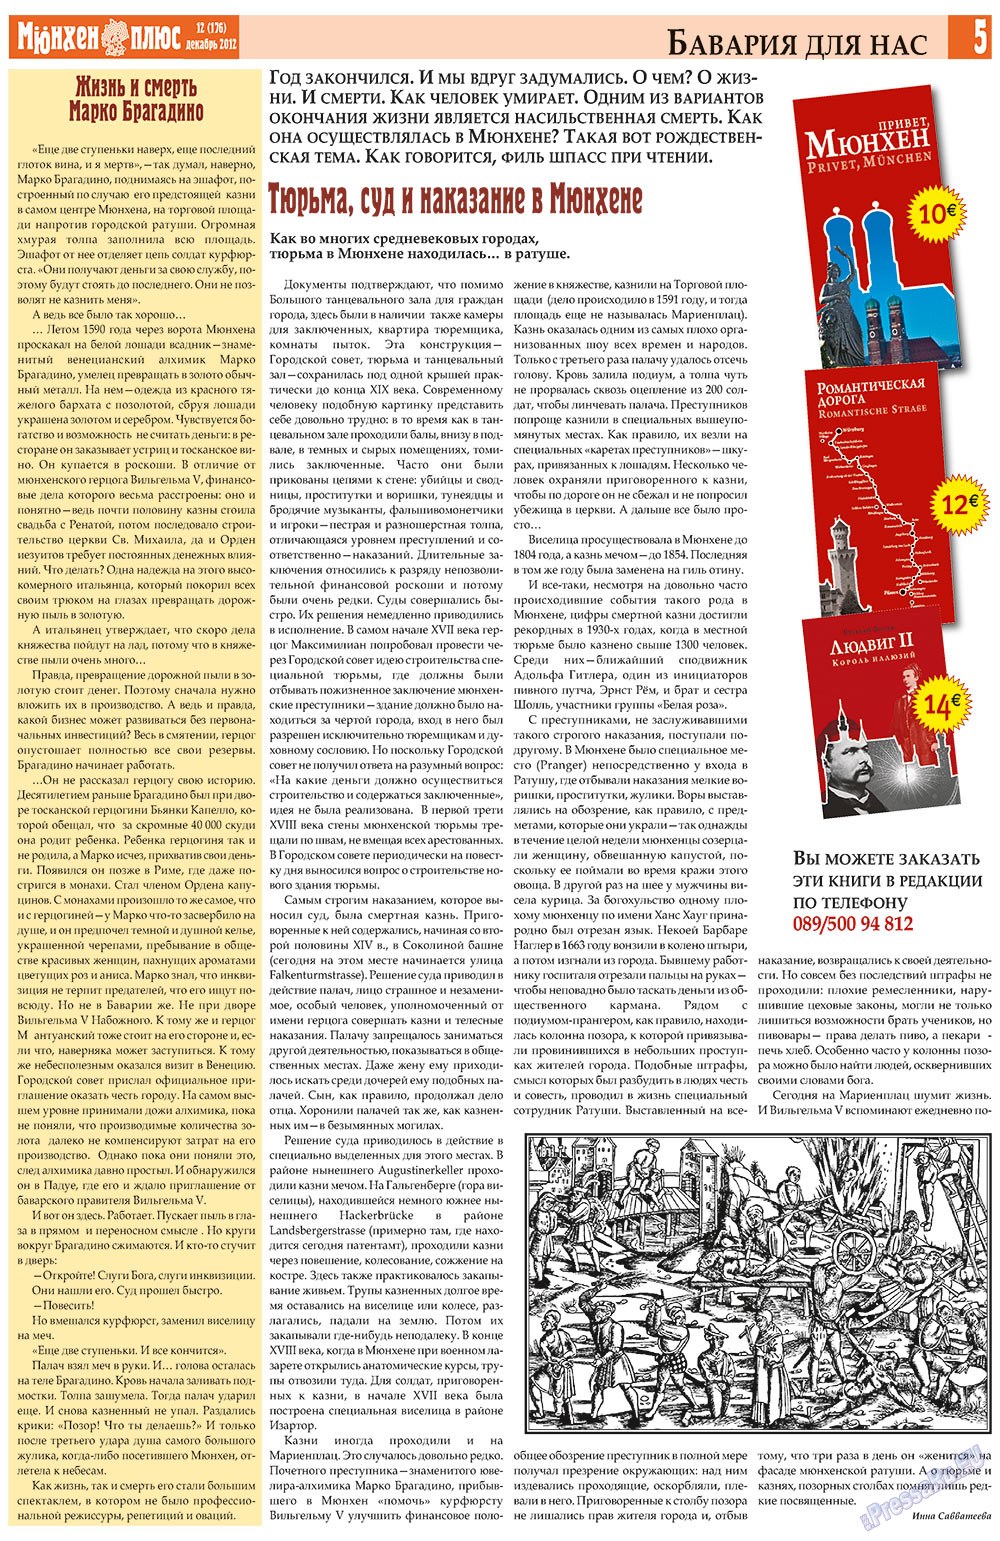 Германия плюс (газета). 2012 год, номер 12, стр. 5